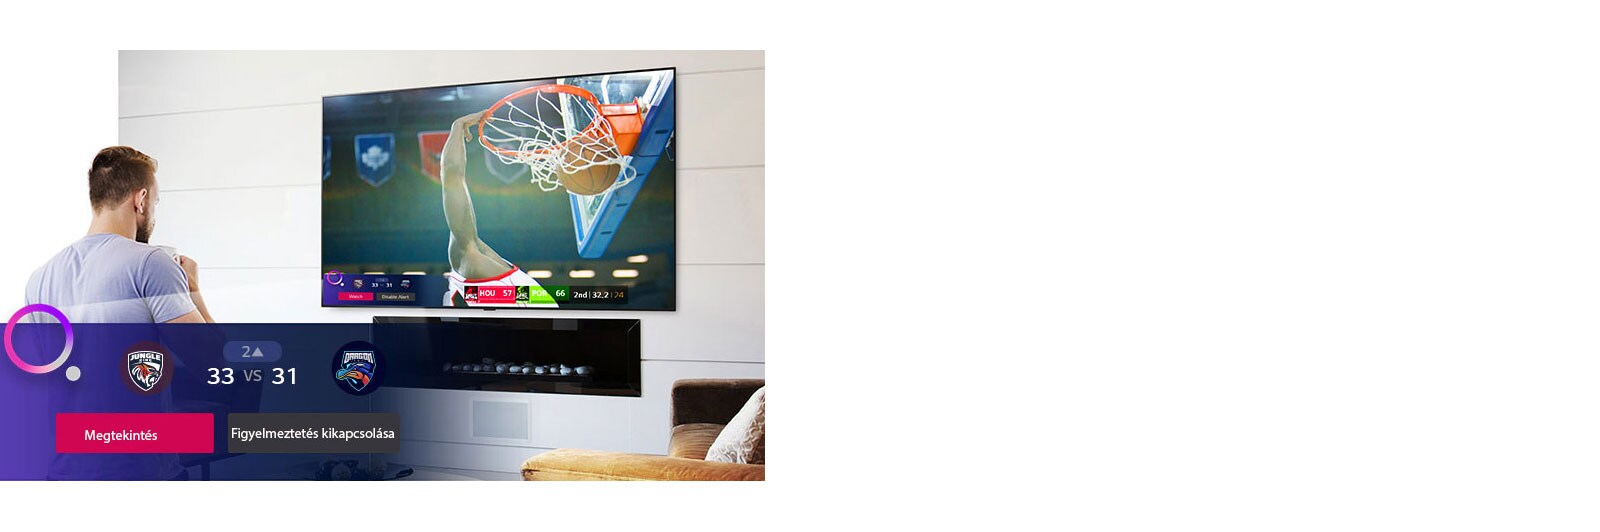 Una scena sullo schermo televisivo di una partita di basket non appena appare l'allerta sportiva.